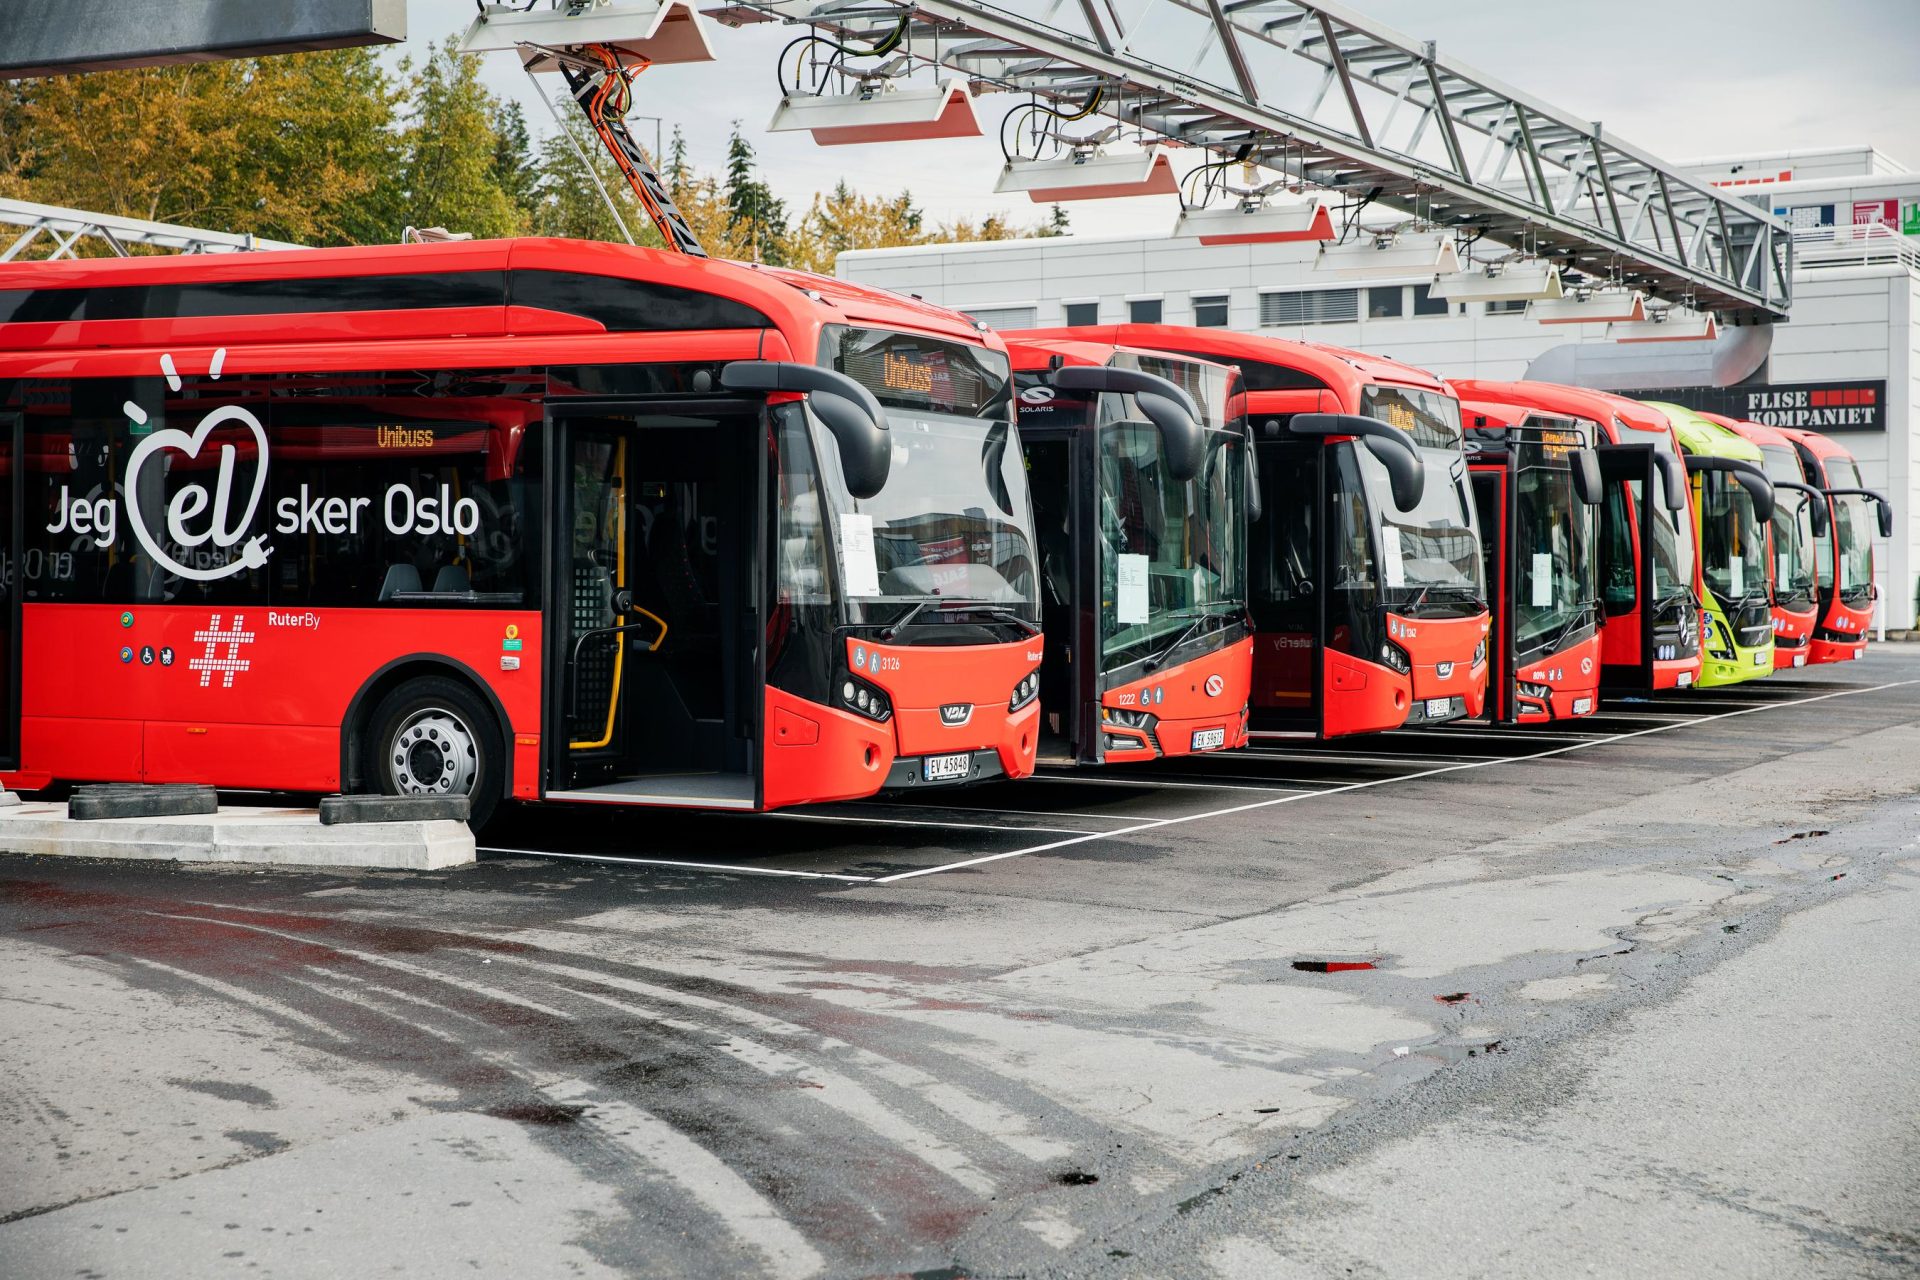 En rad med røde elektriske busser parkert ved ladestasjoner, med slagordet «Jeg elsker oslo» på en av bussene.